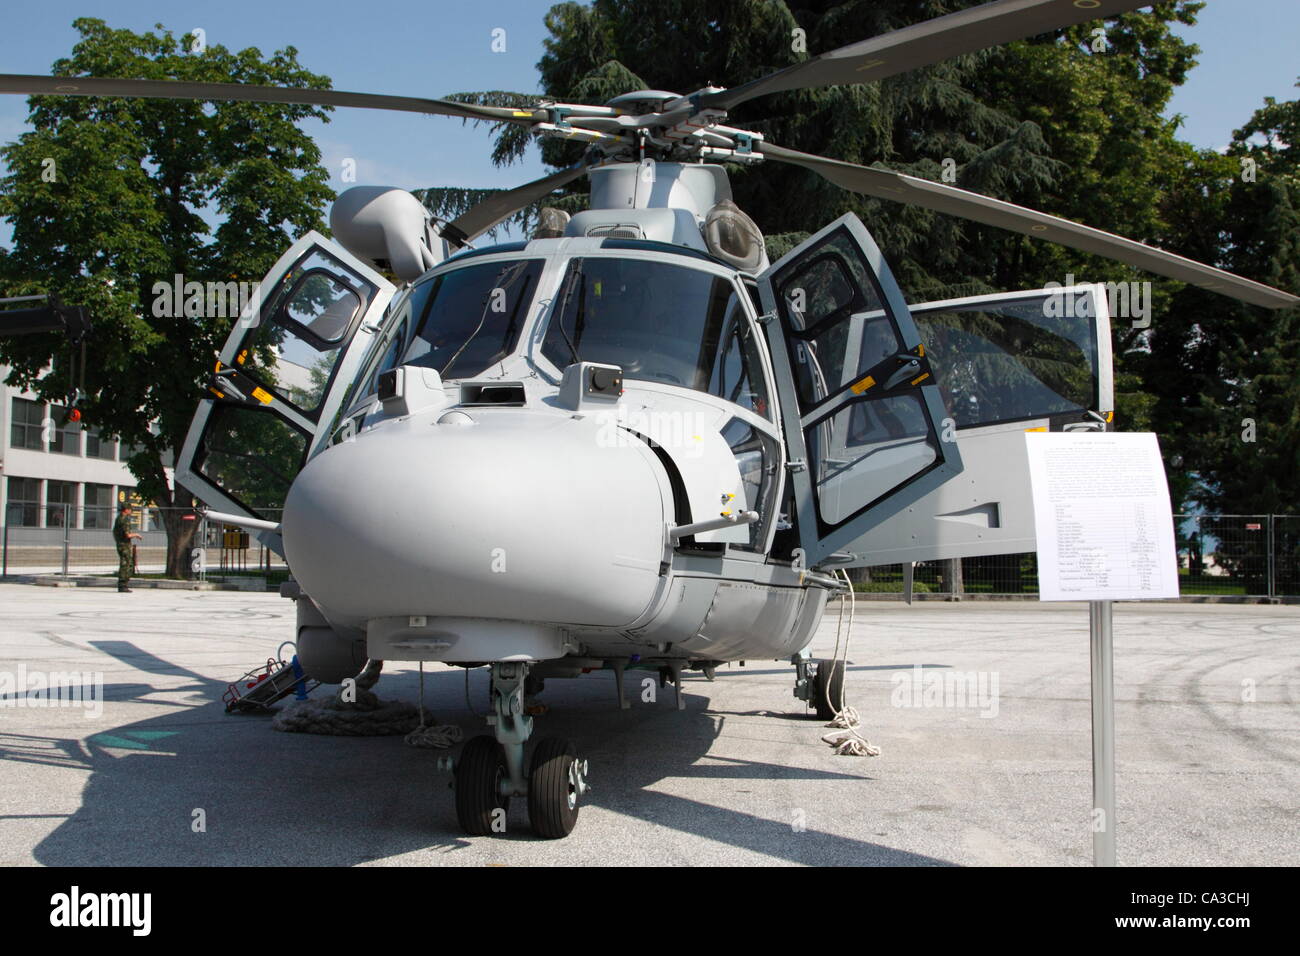 Marina bulgara Eurocopter Panther sul display a Hemus 2012 industria della difesa di esposizione. La Bulgaria ha solo tre pantere dopo la trattativa originale doveva essere tagliato a metà per motivi finanziari la scorsa estate. Plovdiv, Bulgaria, 31/05/2012 Foto Stock